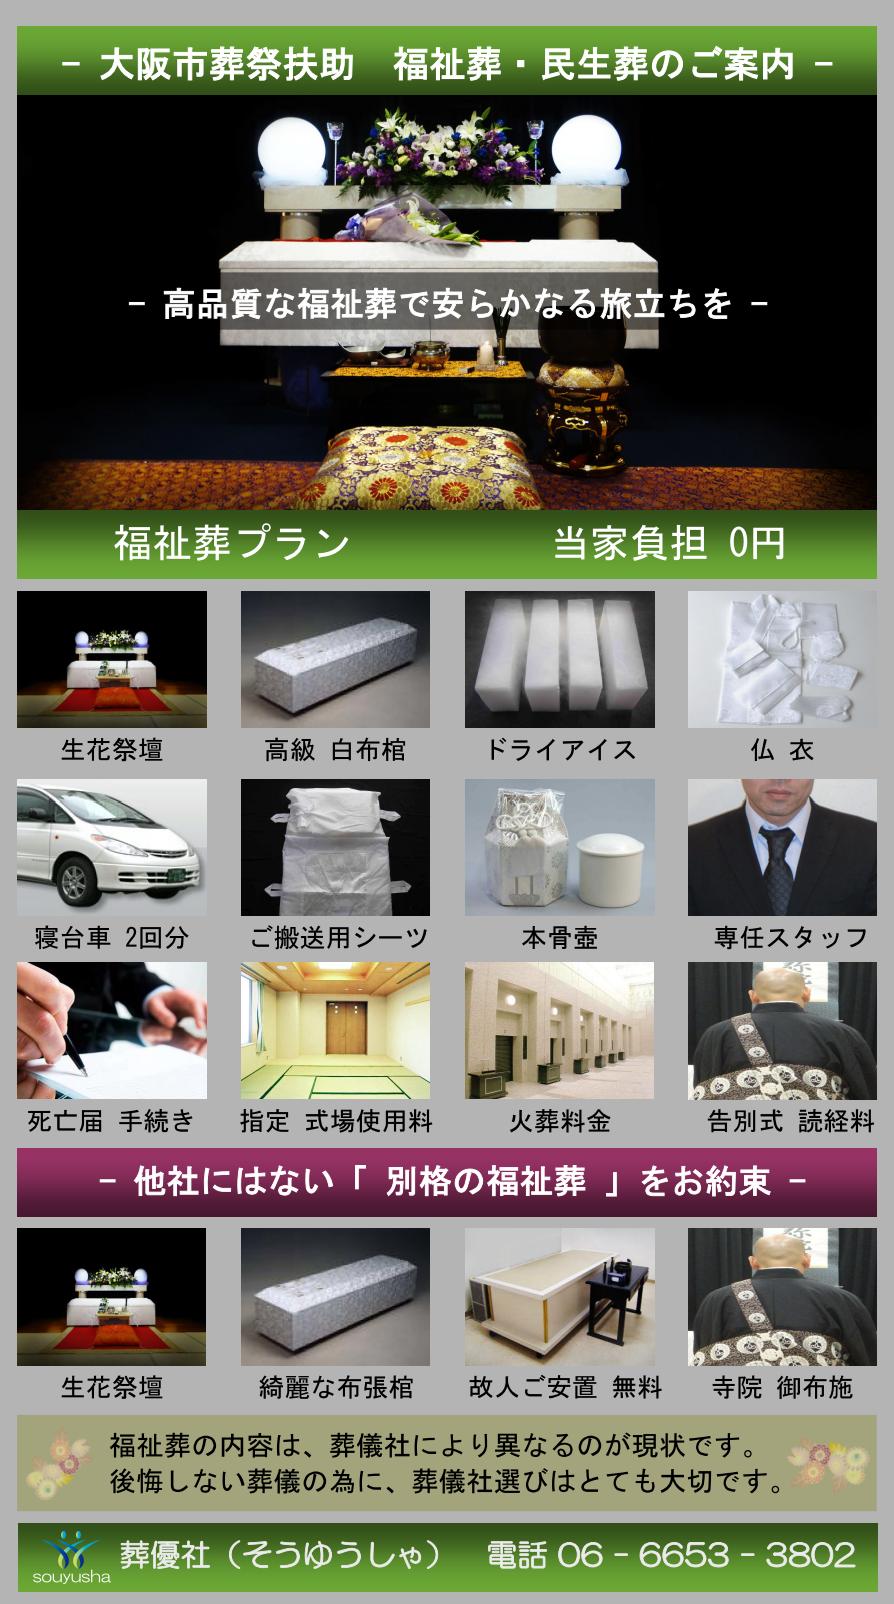 大阪市 住吉区での福祉葬、生活保護者のお葬式のご案内